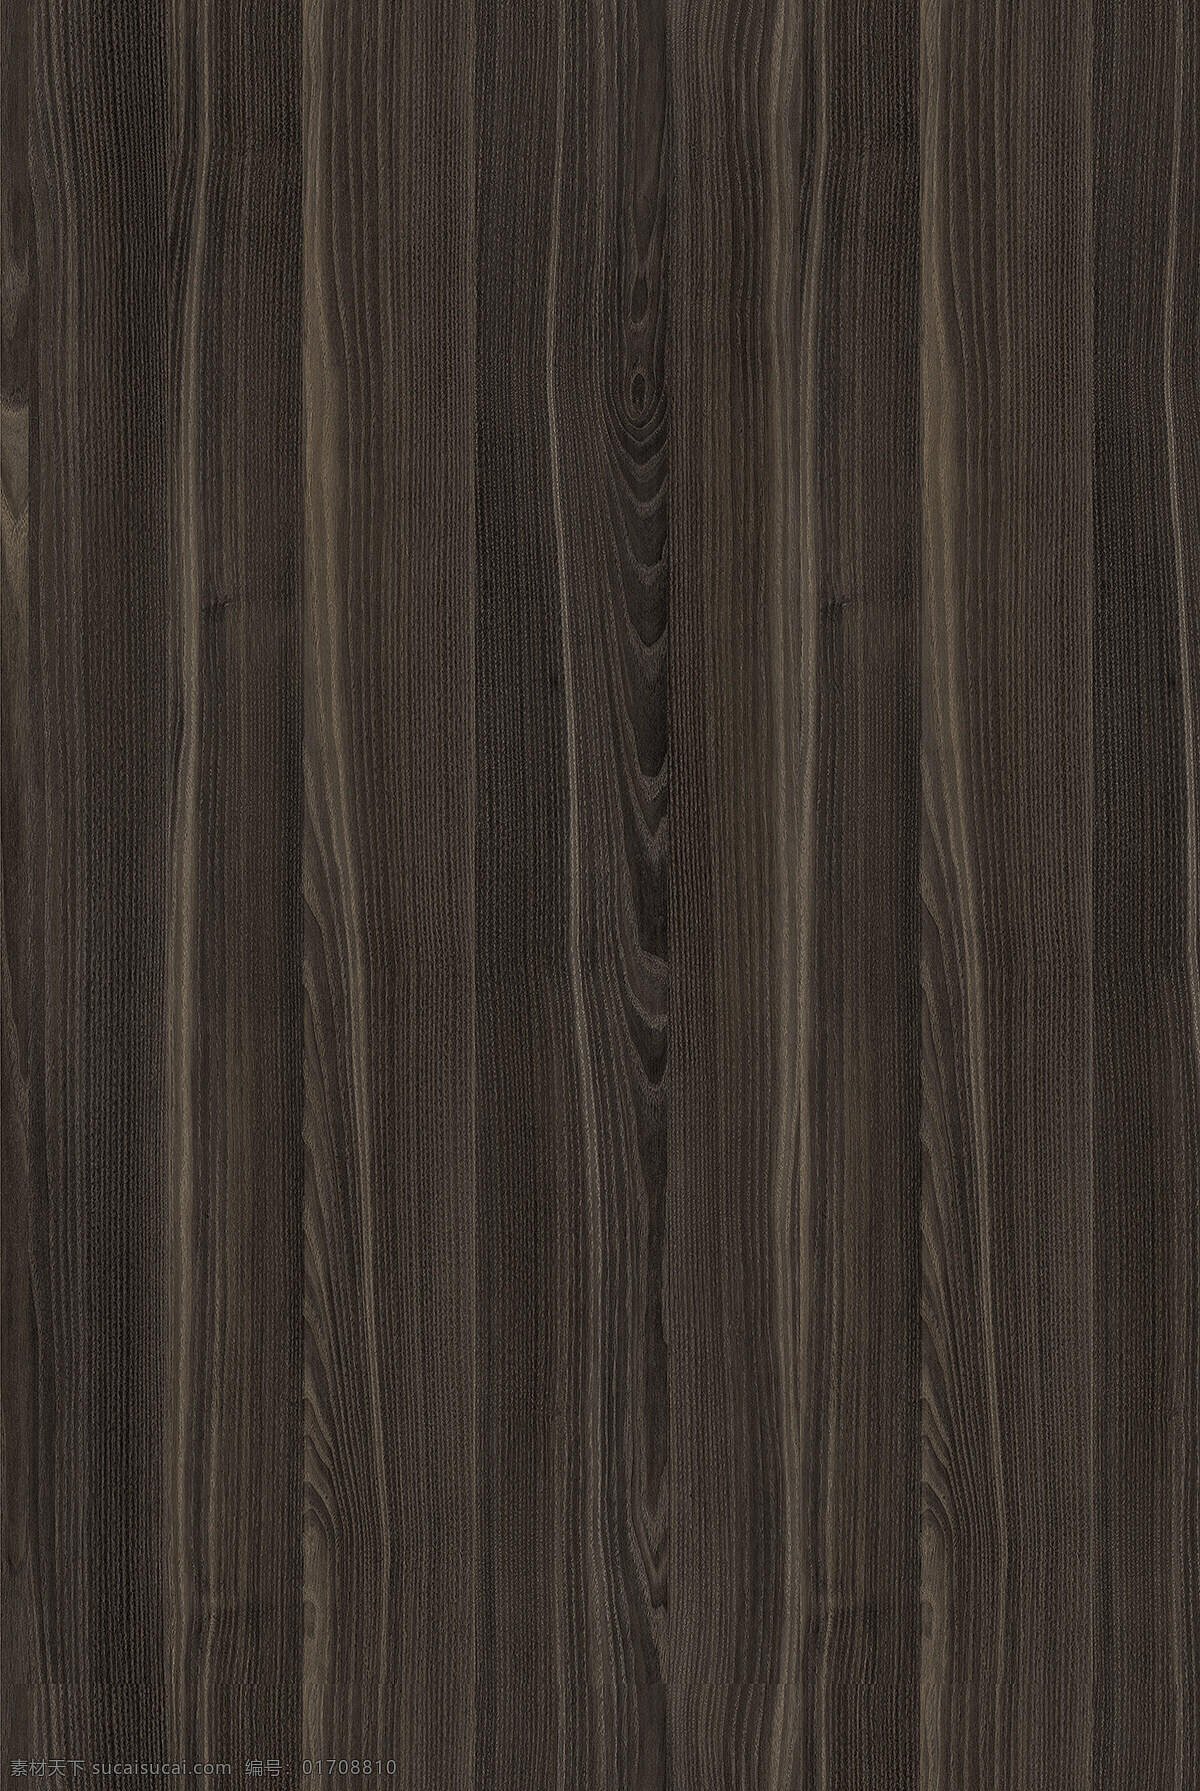 现代风格 褐色木纹 竖条纹 装饰木板 柜体板材 环境设计 室内设计